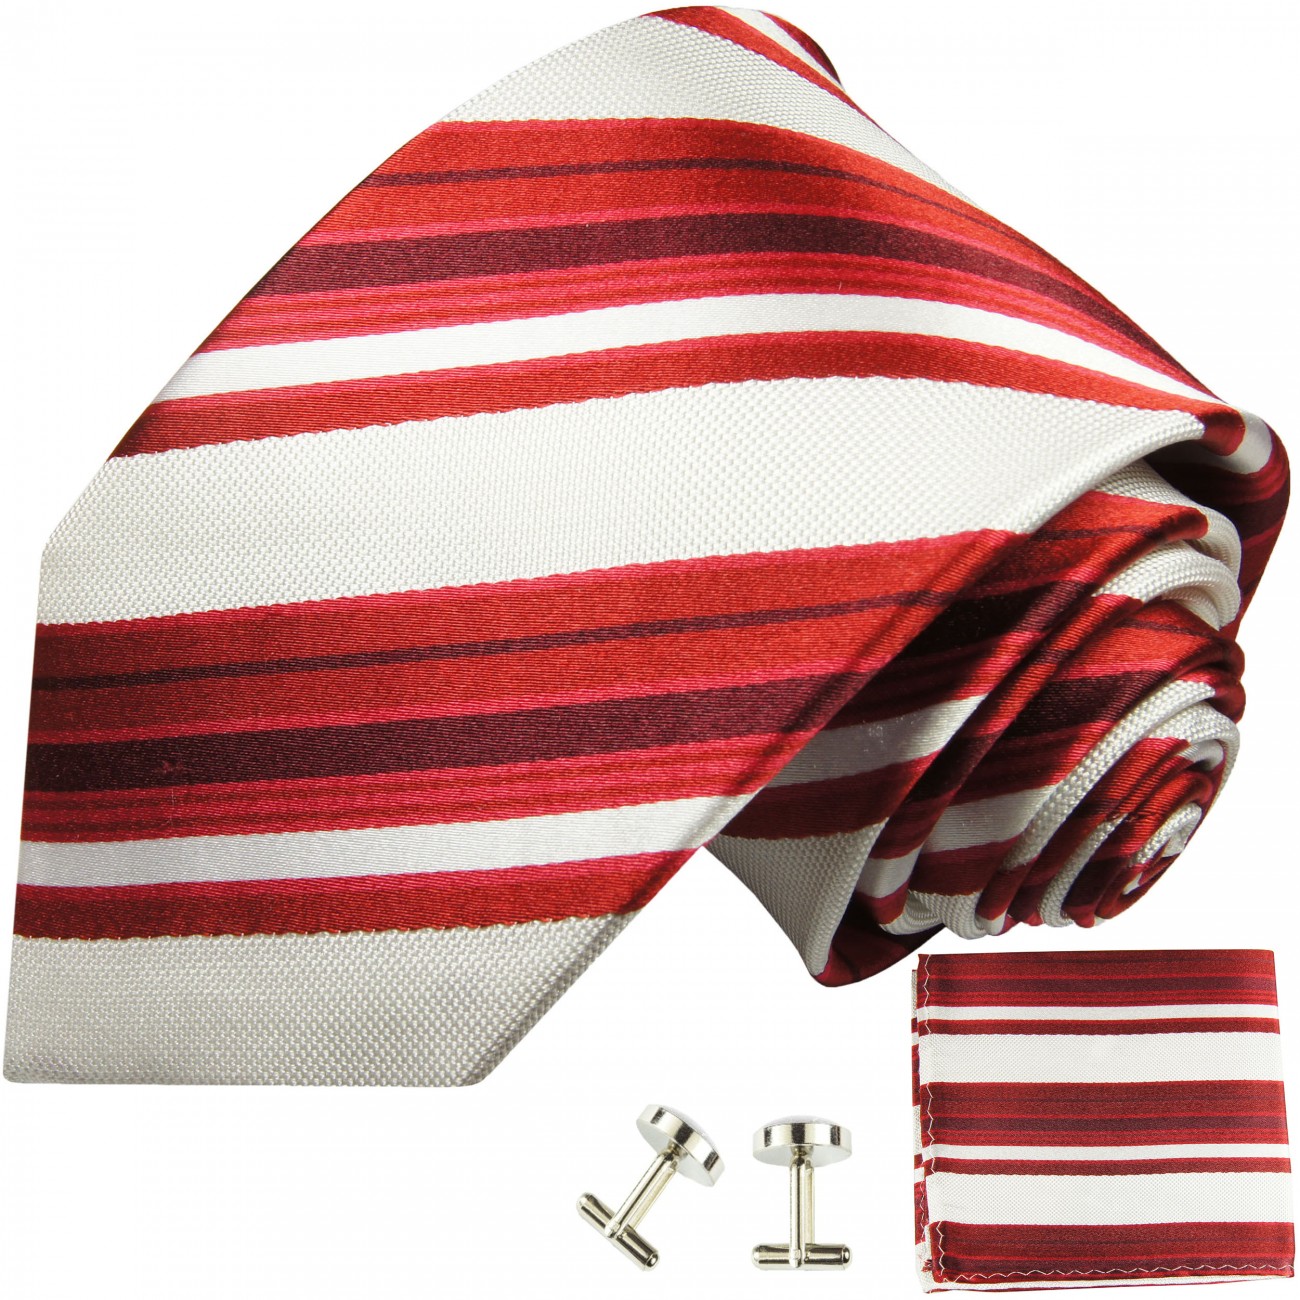 Krawatte rot gestreift mit Einstecktuch und Manschettenknöpfe